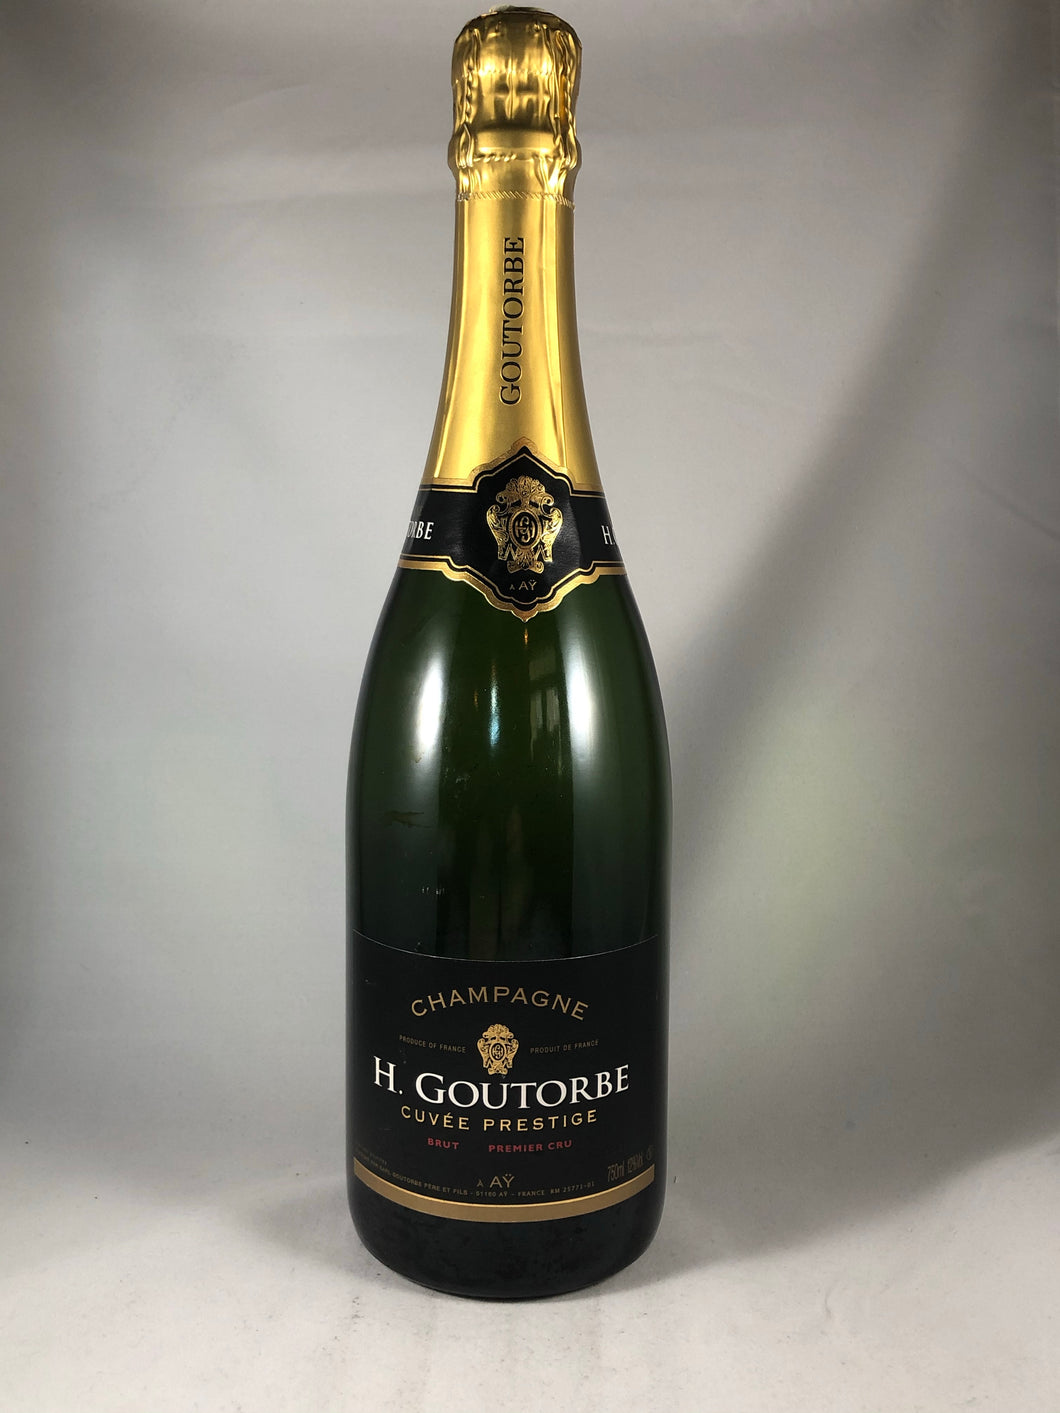 H. Goutorbe Cuvée Prestige Champagne 2014, France